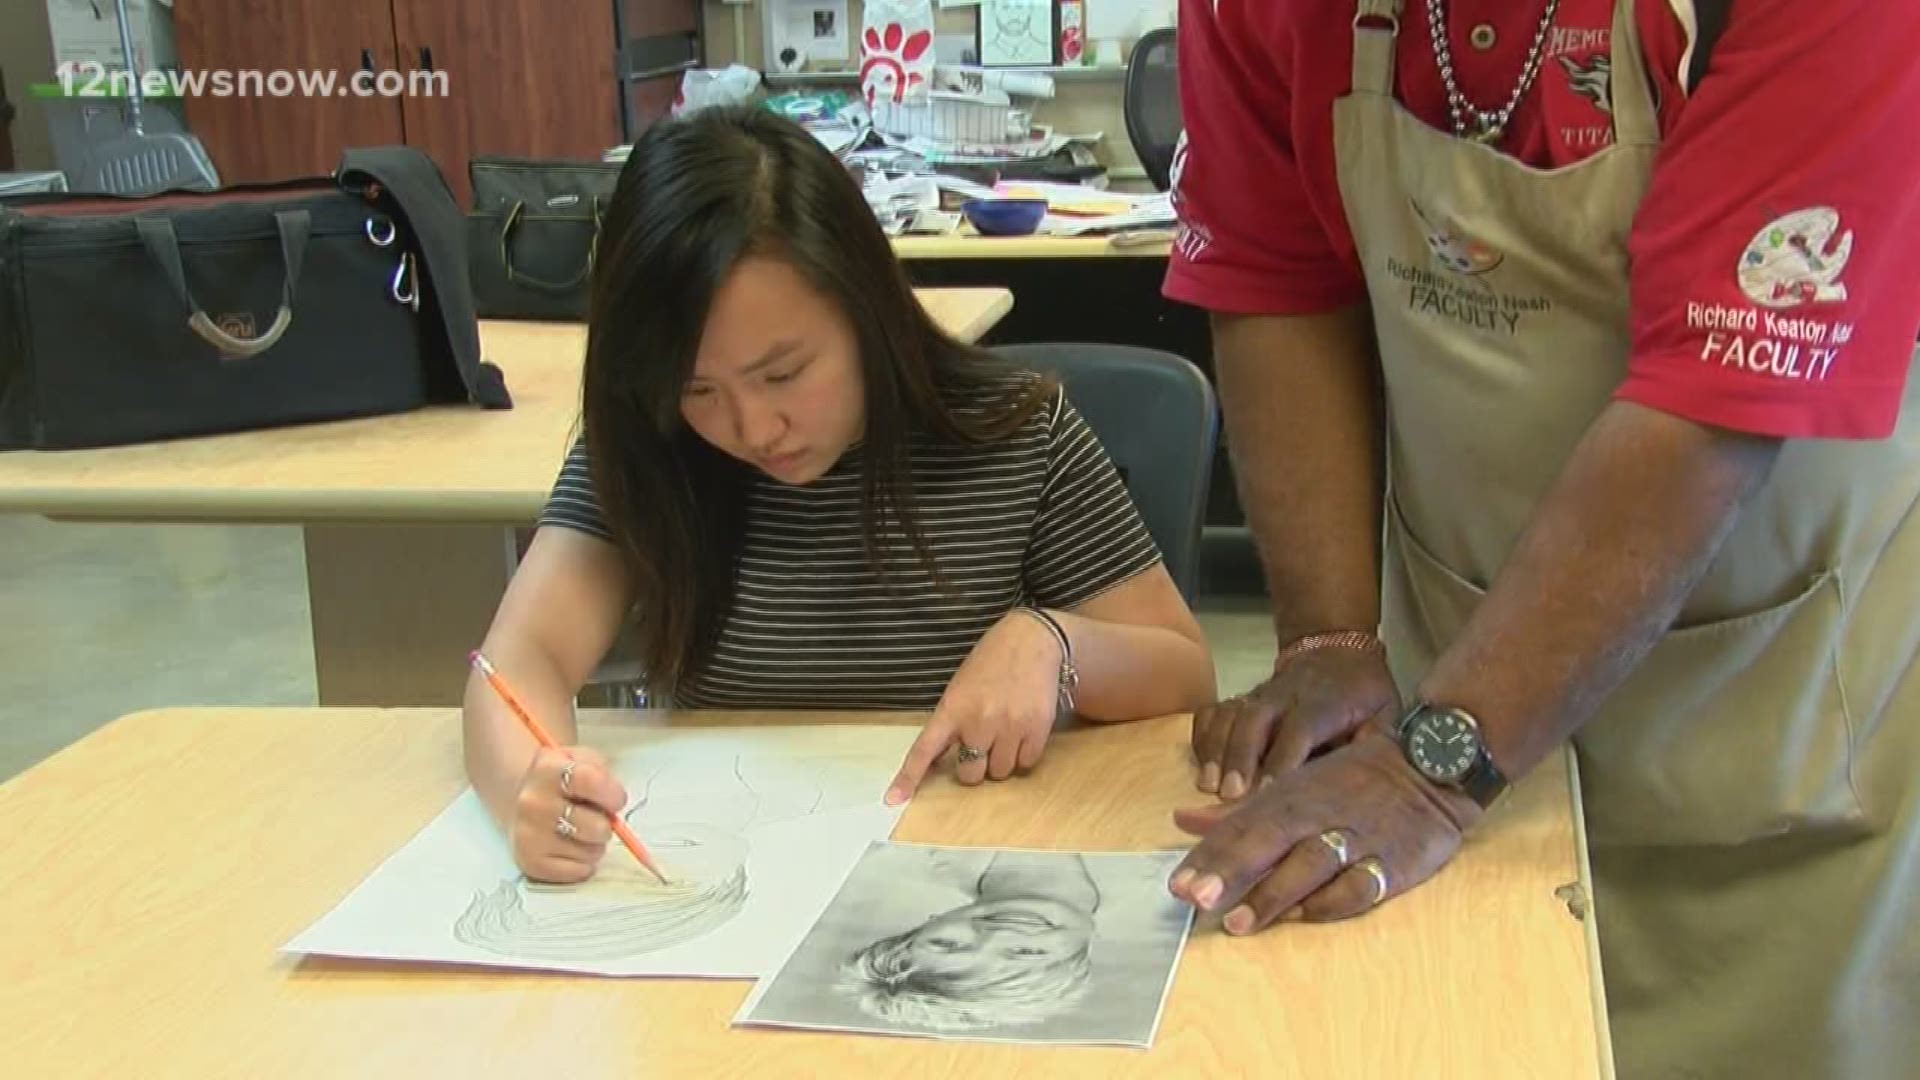 Star Student wows Memorial High School art teacher